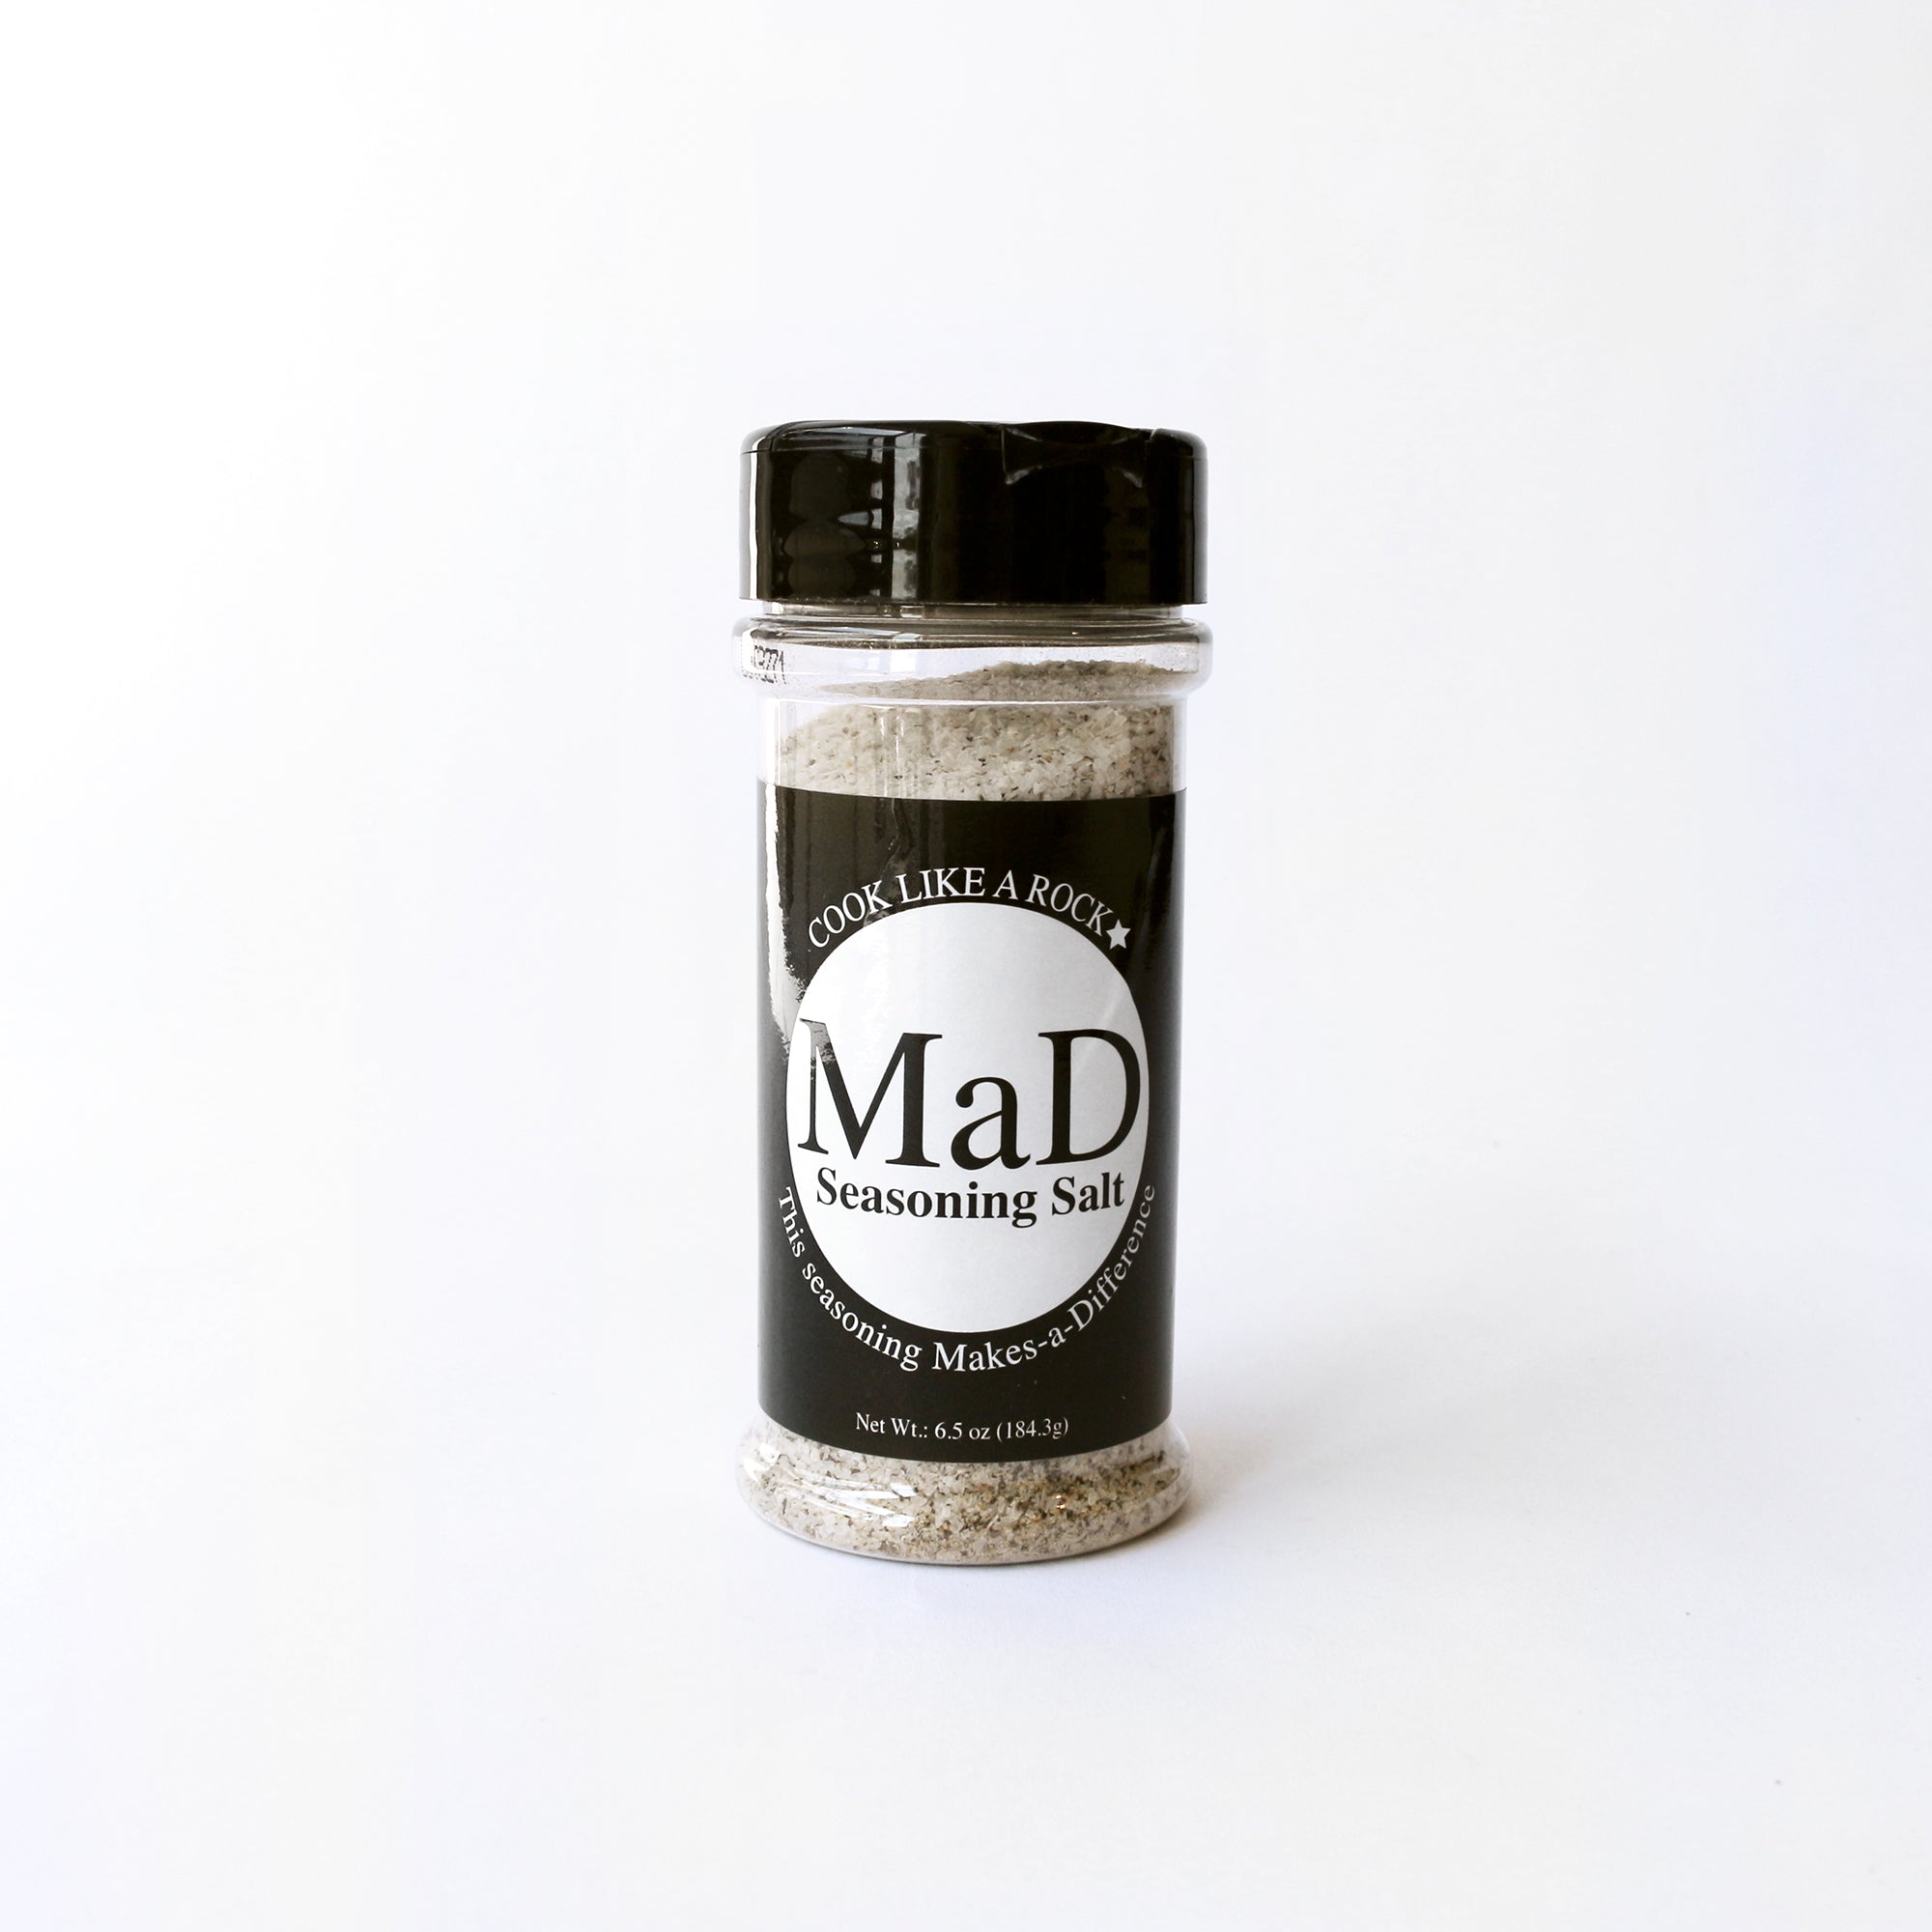 Seasoned Salt